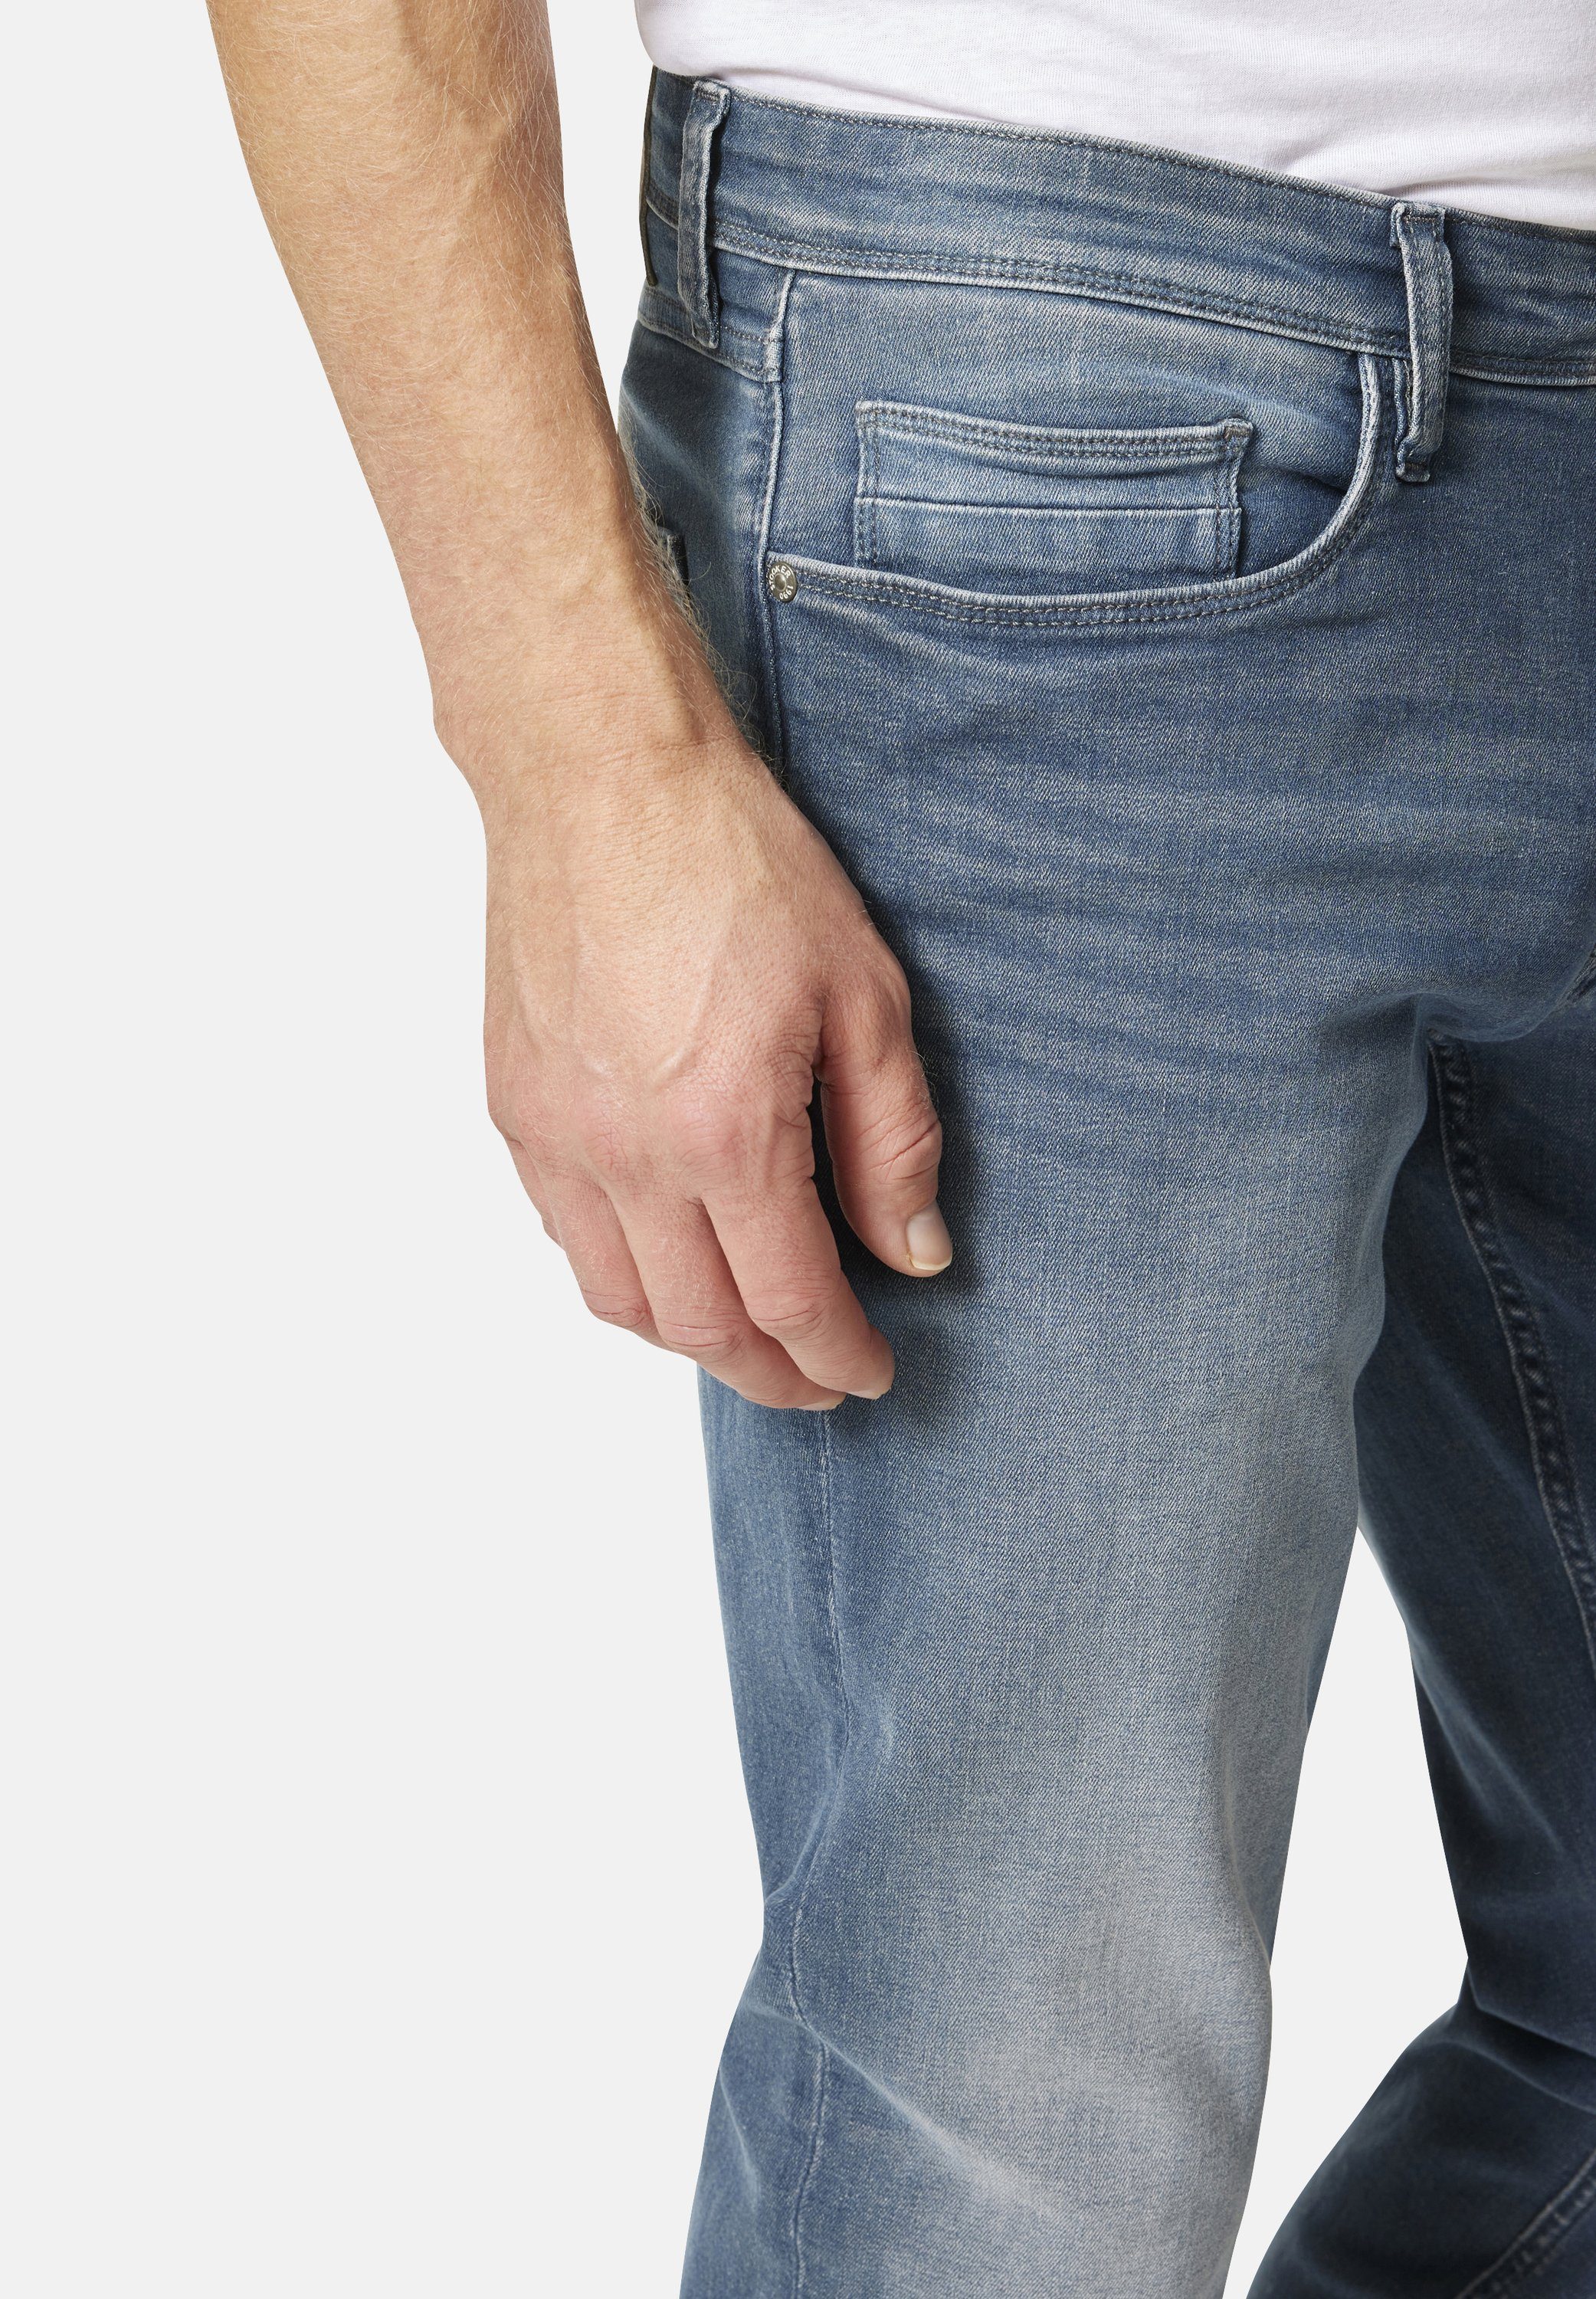 Stooker Men 5-Pocket-Jeans Glendale Fit Straight Season Slim